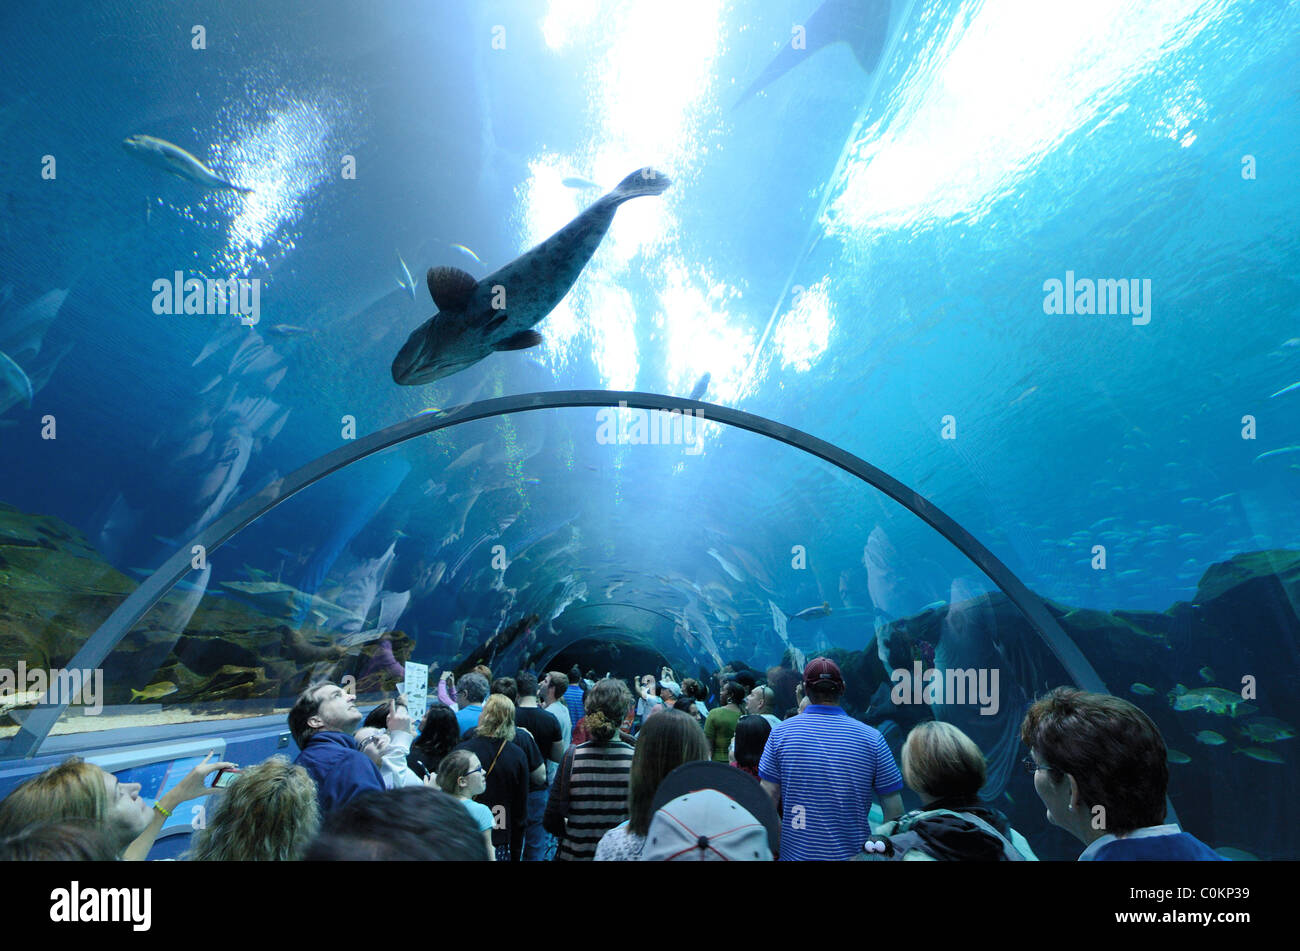 The Georgia Aquarium, the world's largest aquarium, in Atlanta, Georgia ...